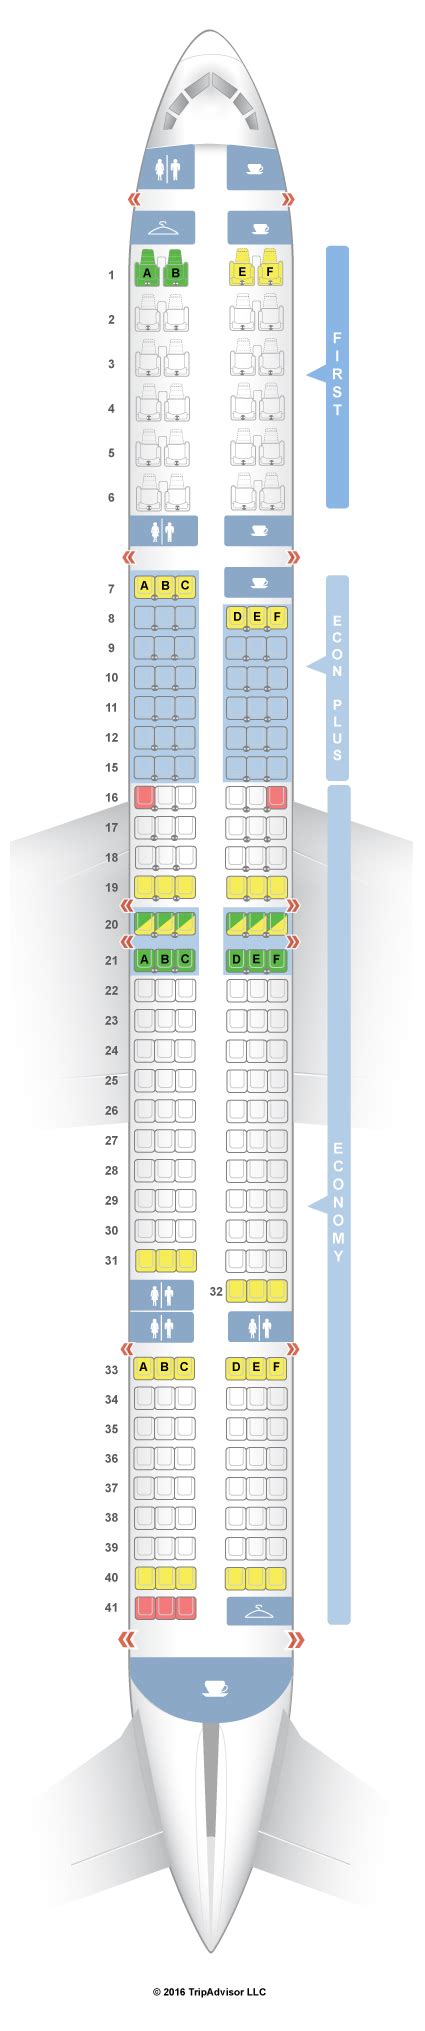 Seatguru Seat Map United Boeing 757 300 753 V1v2